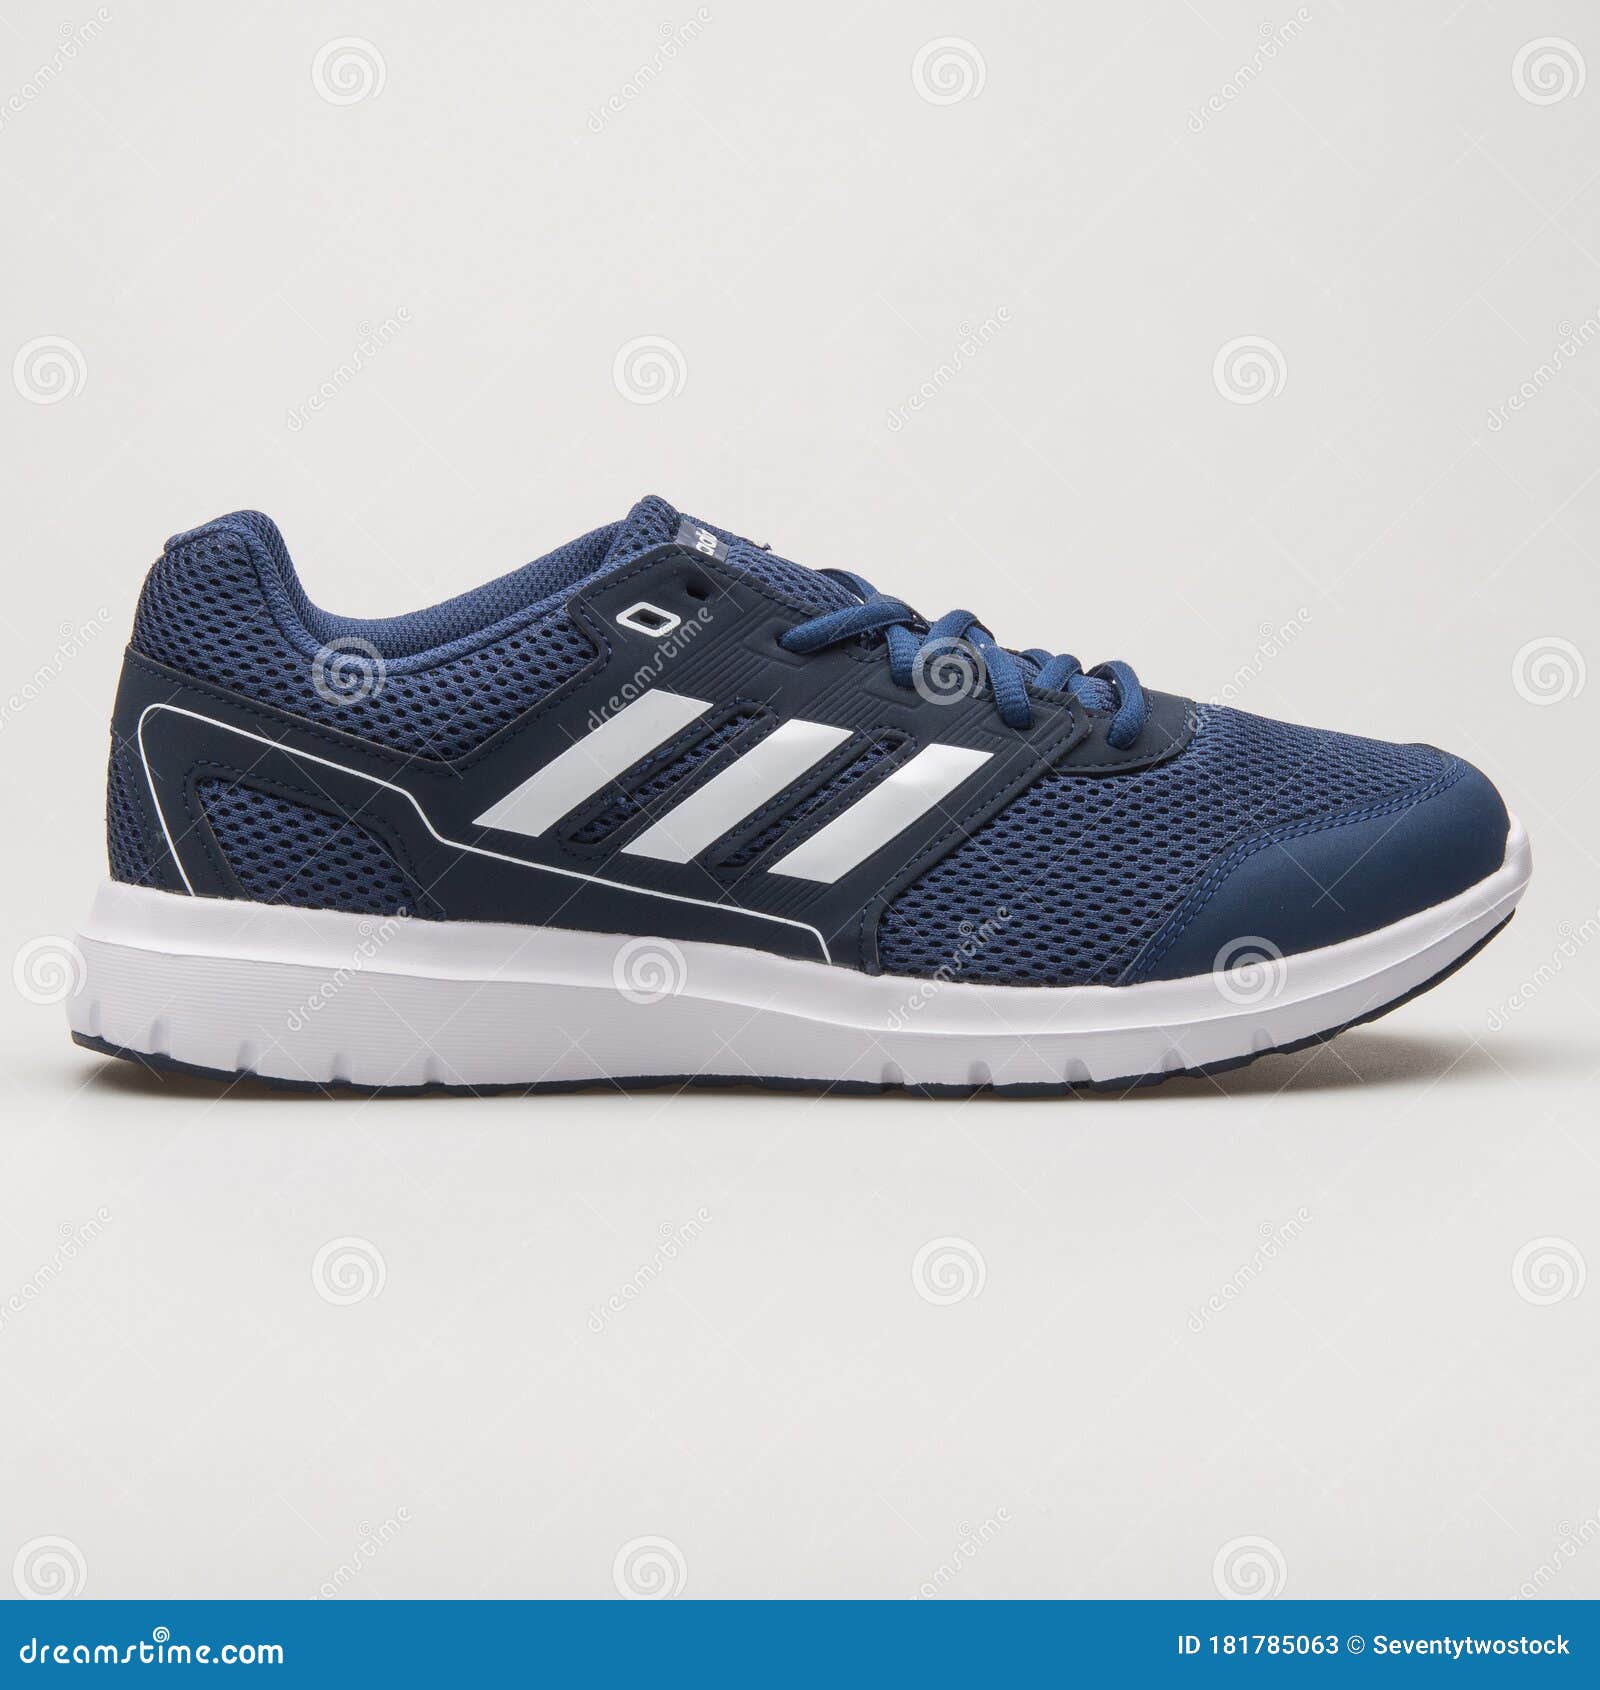 por favor no lo hagas pubertad contaminación Adidas Duramo Lite 20 Zapatillas Azul Marino Y Blanco Foto de archivo  editorial - Imagen de accesorios, calzado: 181785063